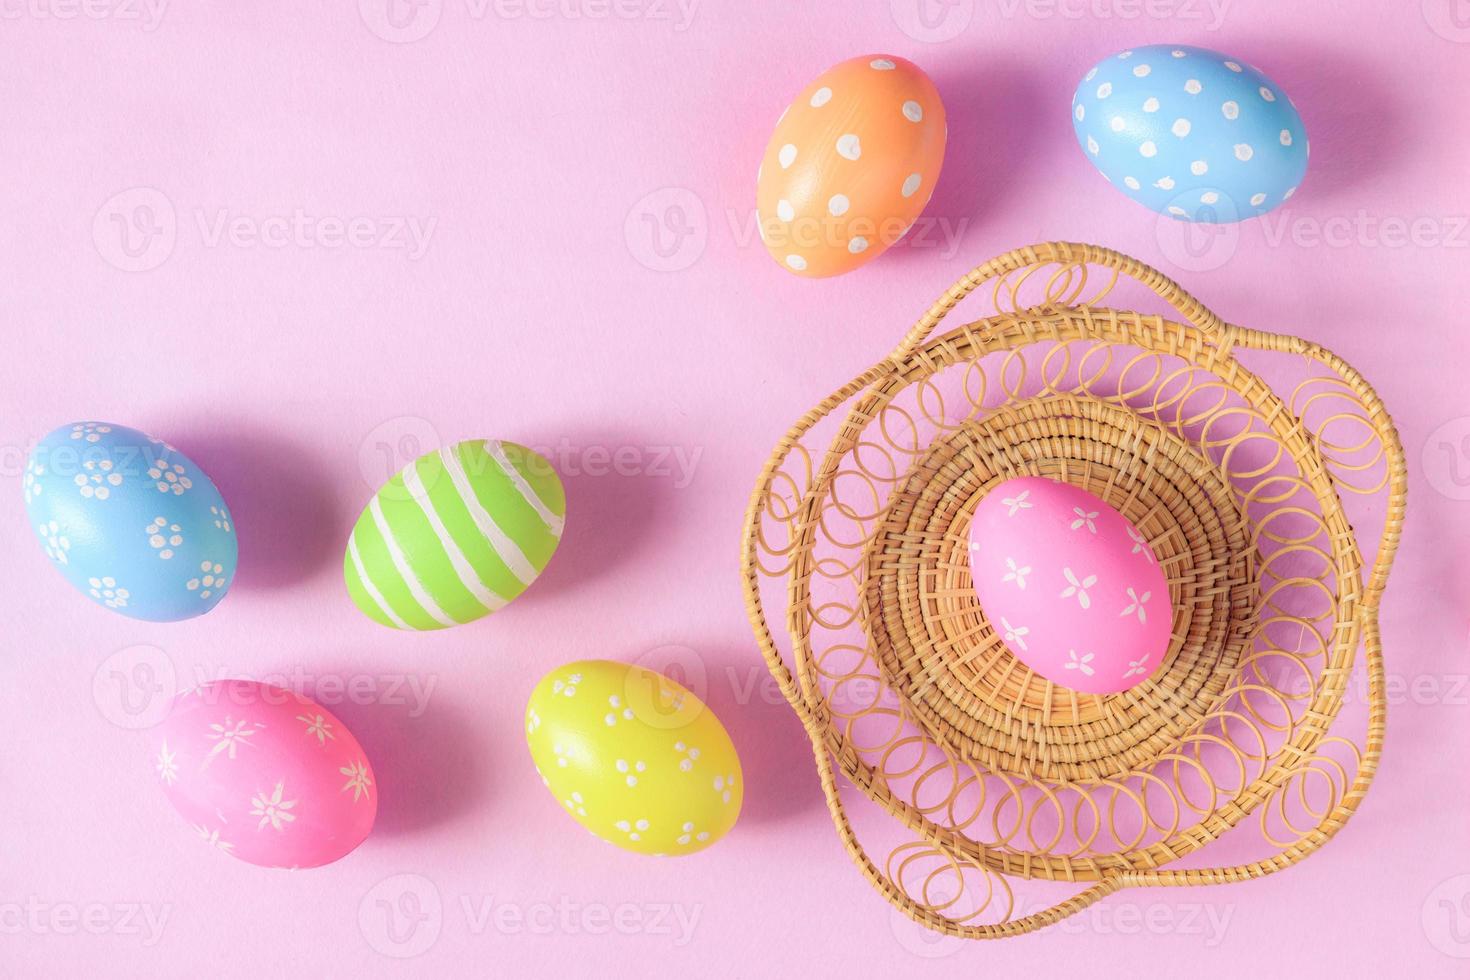 glücklich Ostern Urlaub Gruß Karte Konzept. bunt Ostern Eier und Frühling Blumen auf Pastell- Rosa Hintergrund. eben legen, oben Sicht, Kopieren Raum. foto